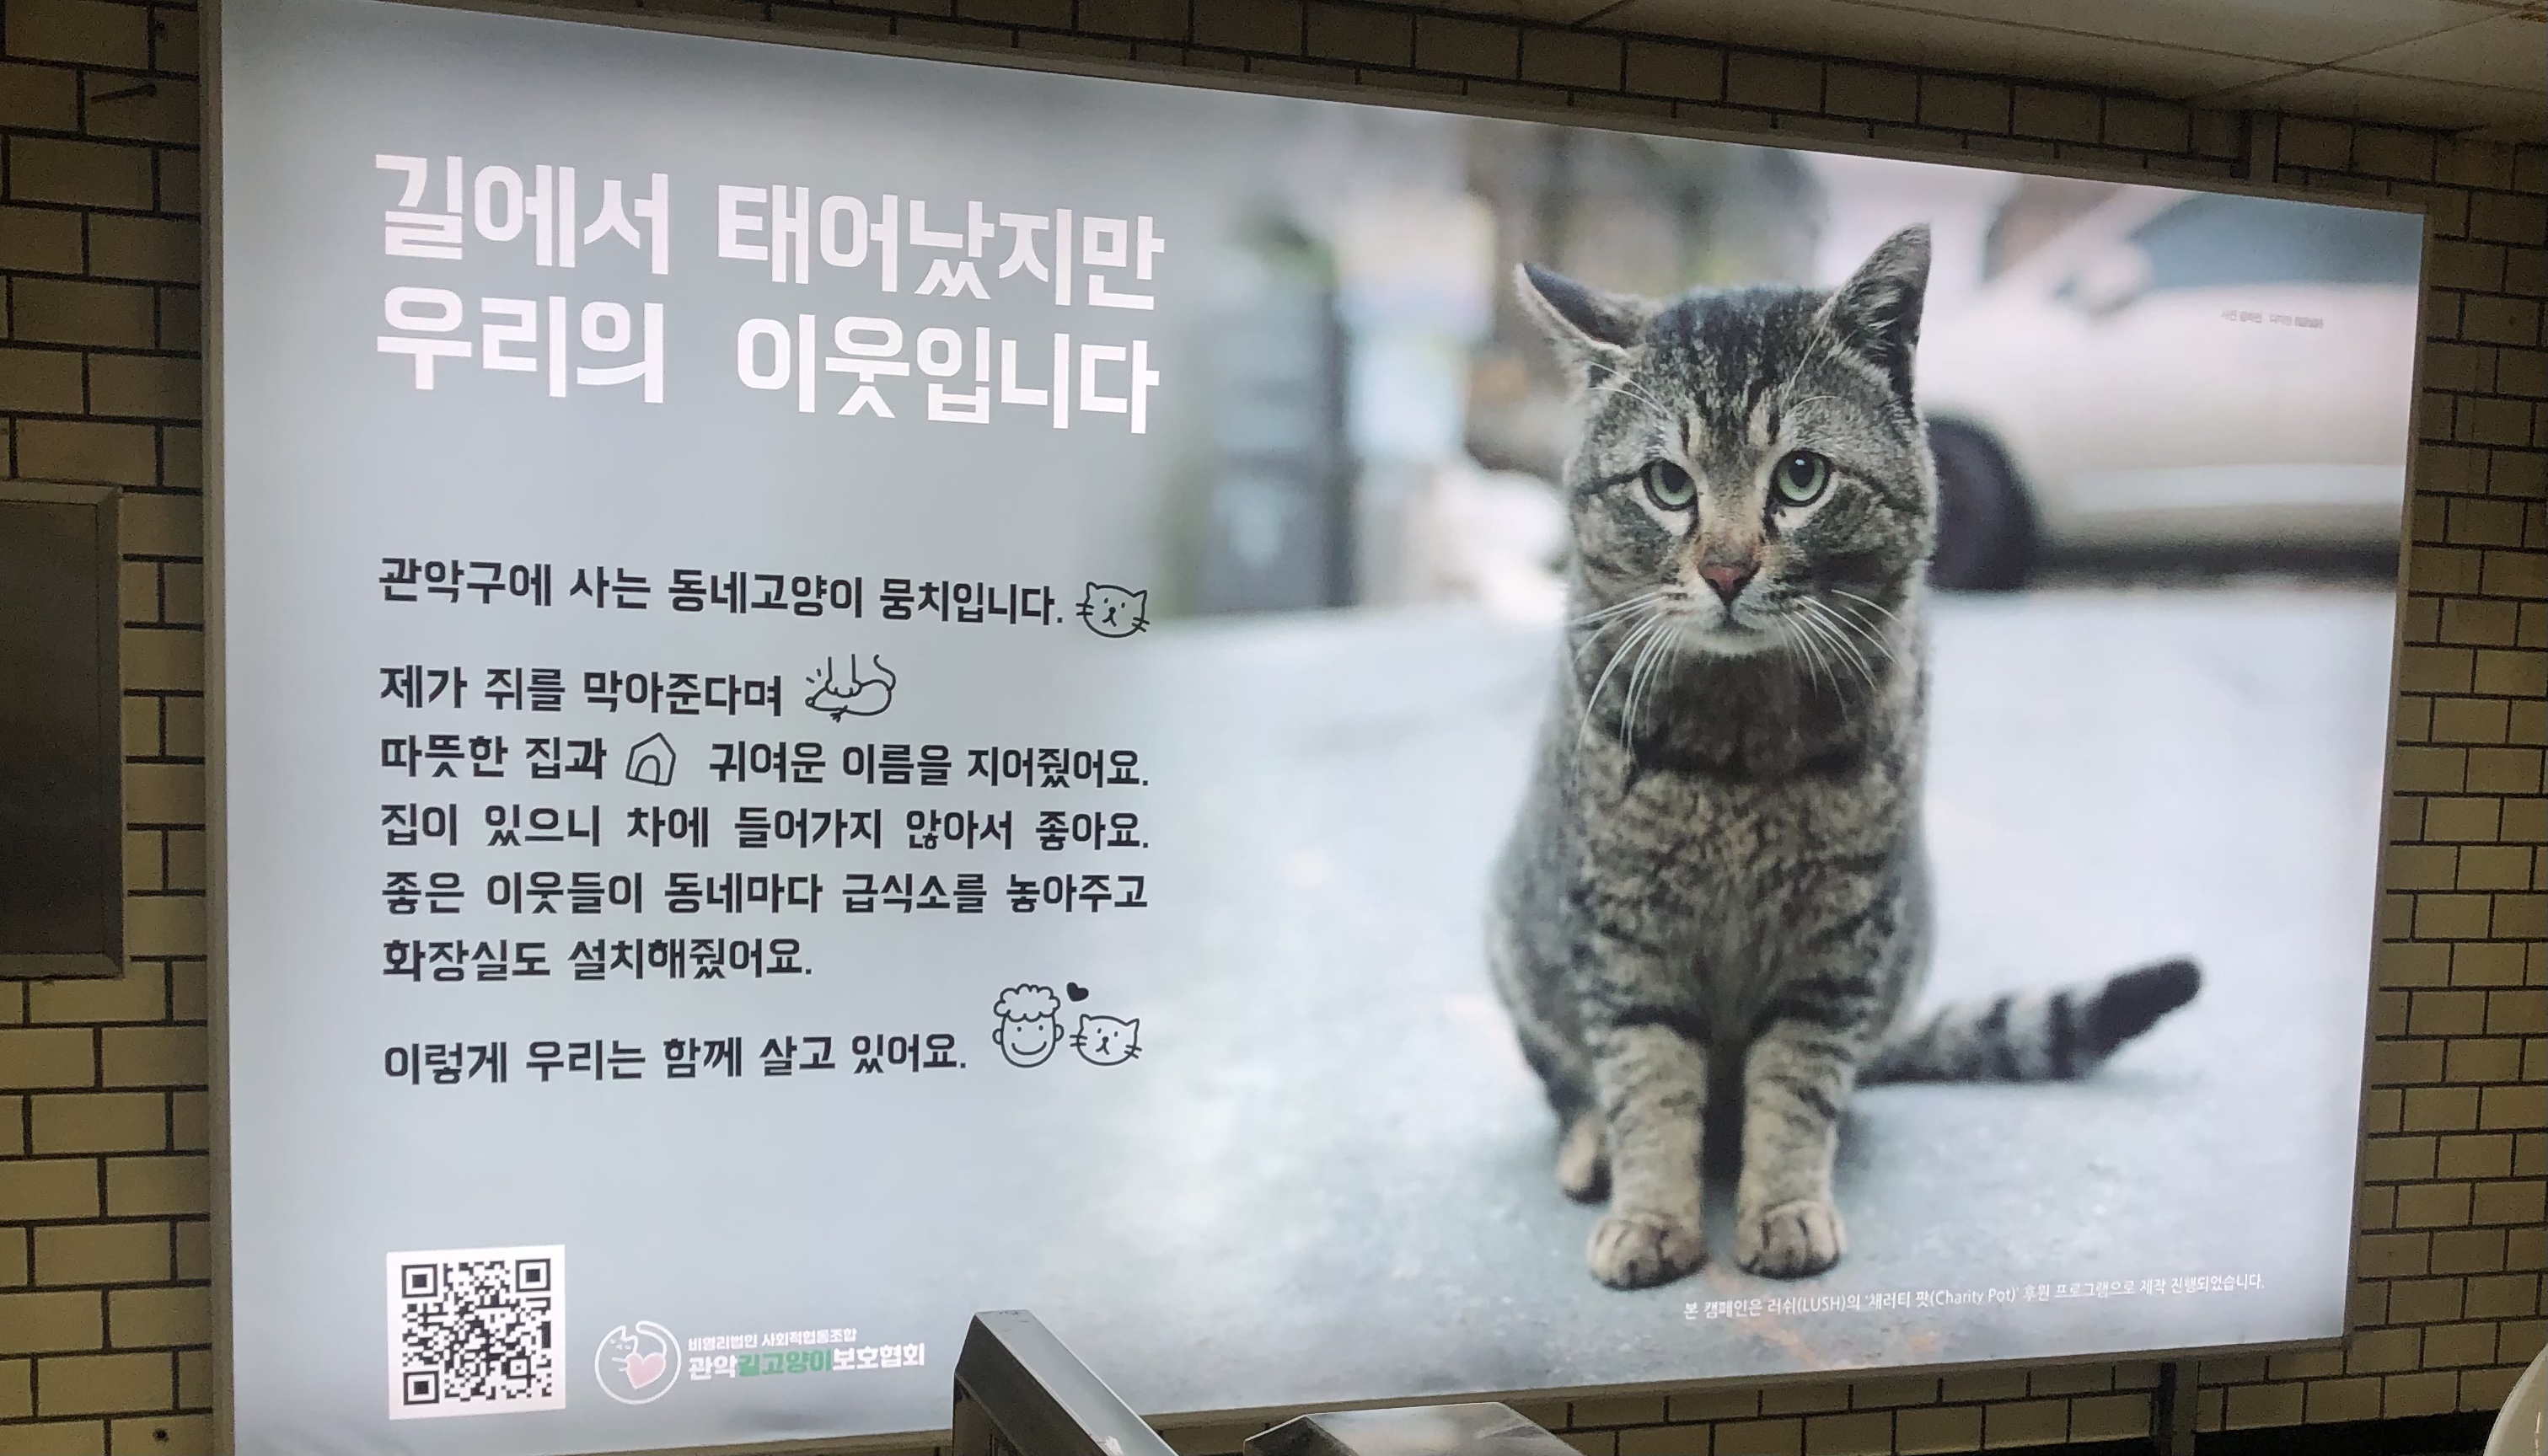 지하철에서 캣맘협회가 만든 광고 봄